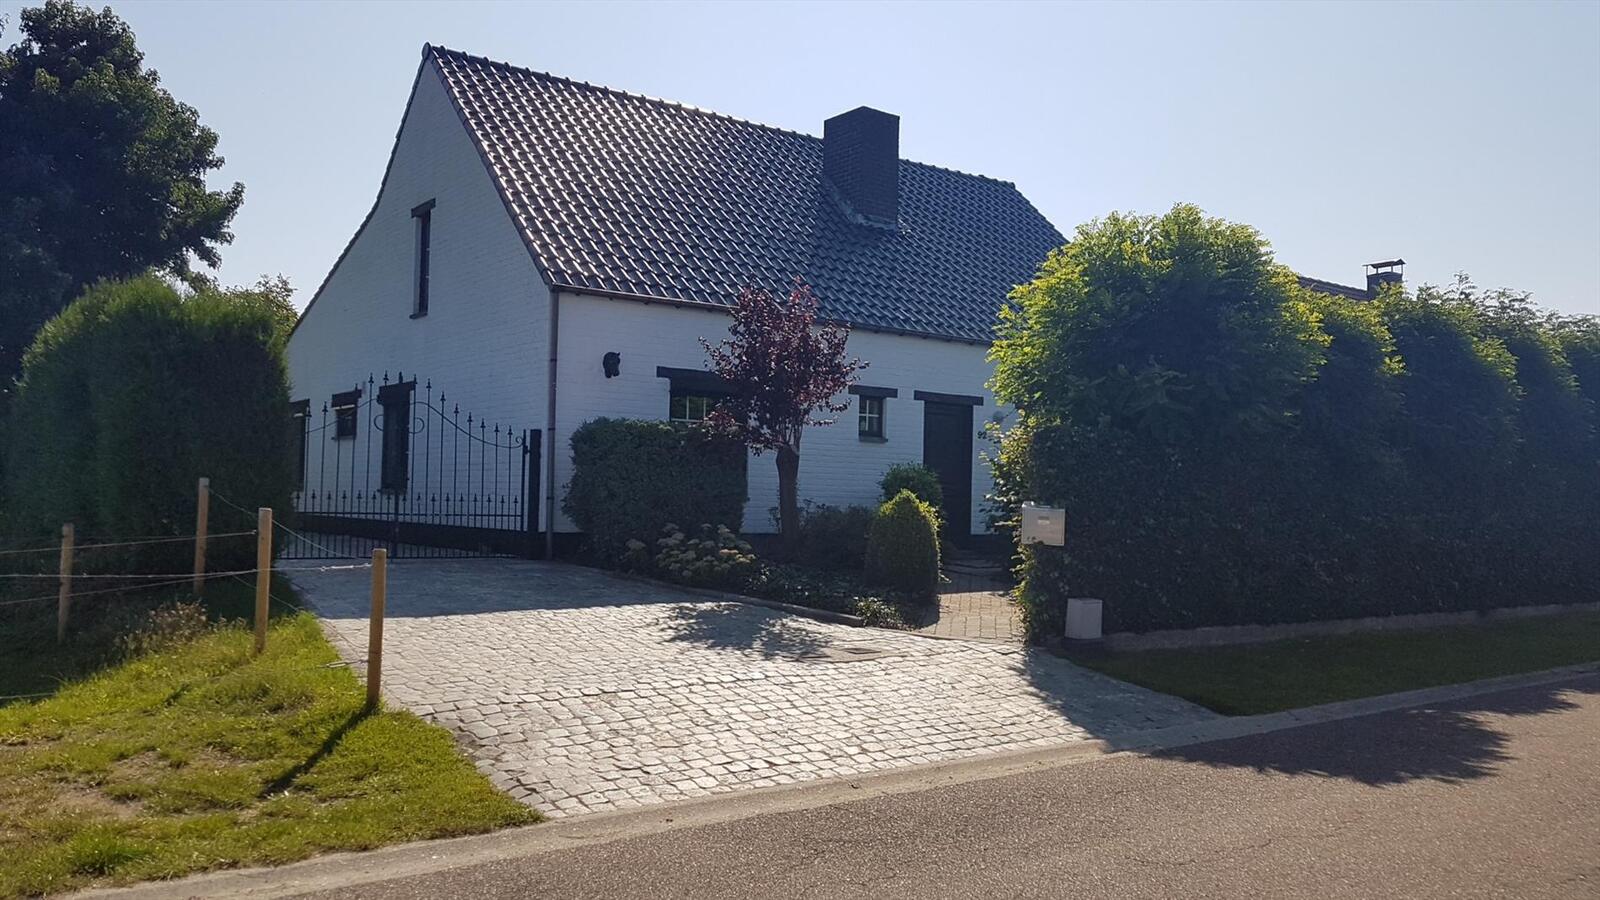 Property sold in Heppen